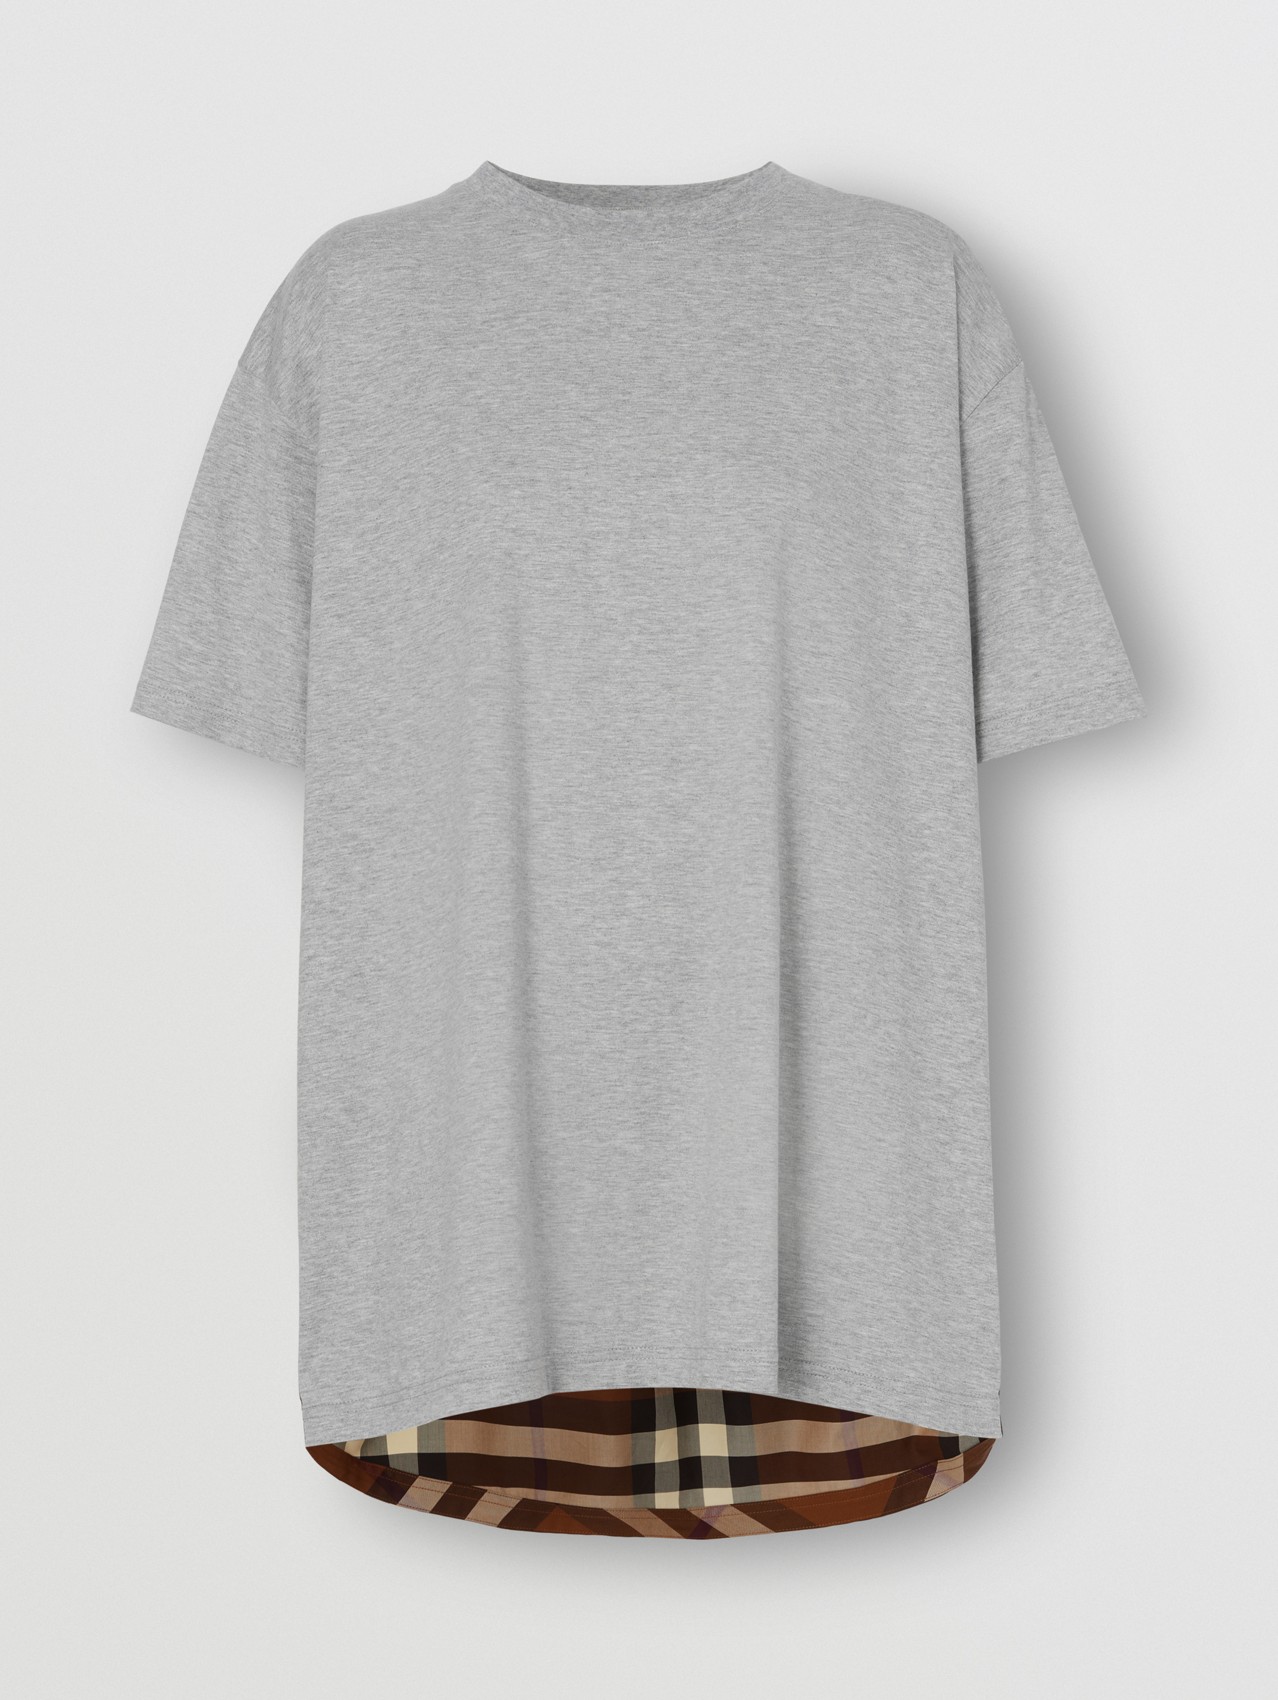 Camiseta extragrande en algodón con panel a cuadros (Mezcla De Gris Pálido)